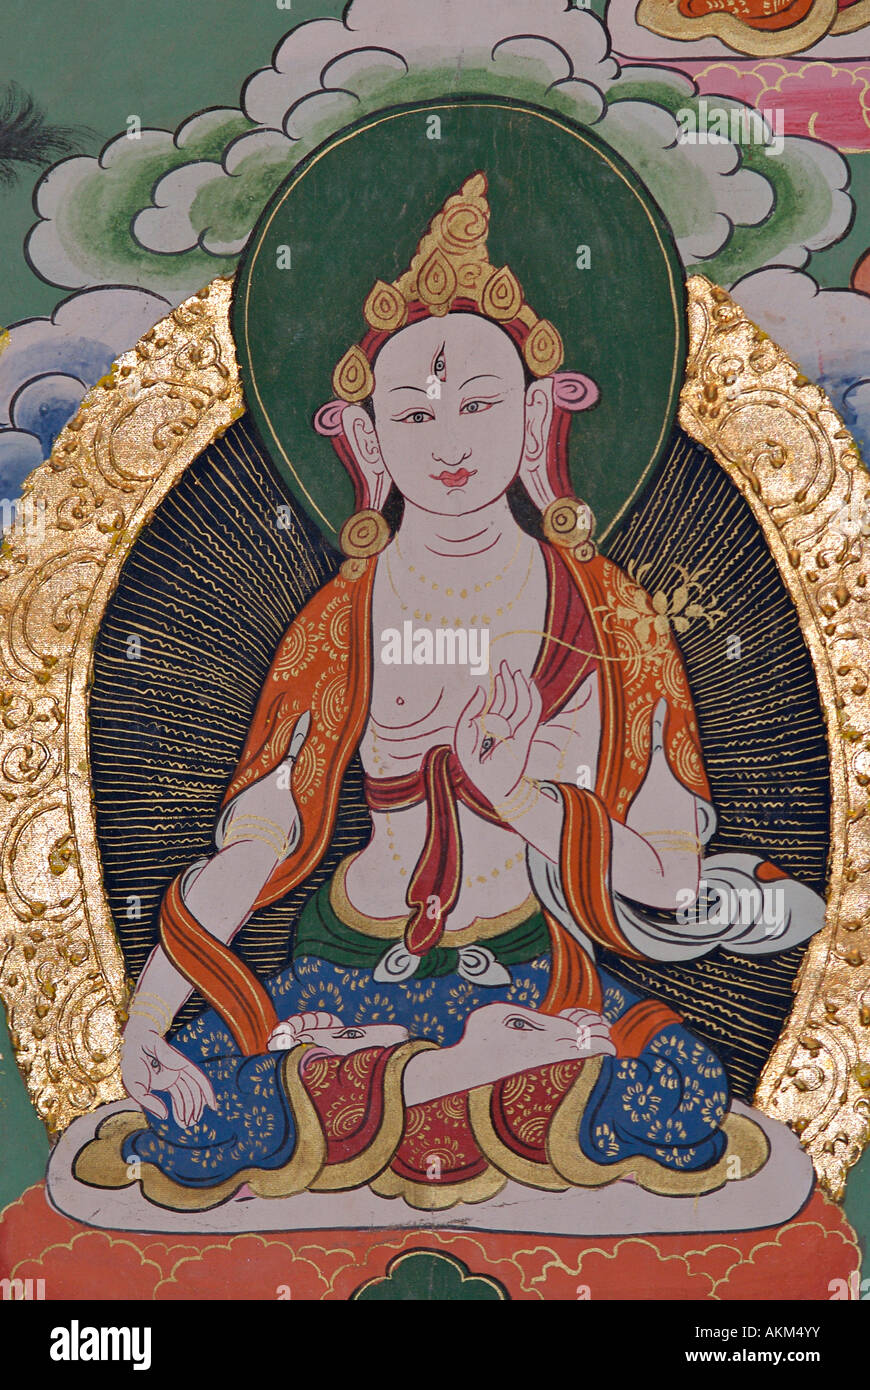 Dettaglio di un dipinto Thanka tibetani iconografia buddista del Tibet Foto Stock